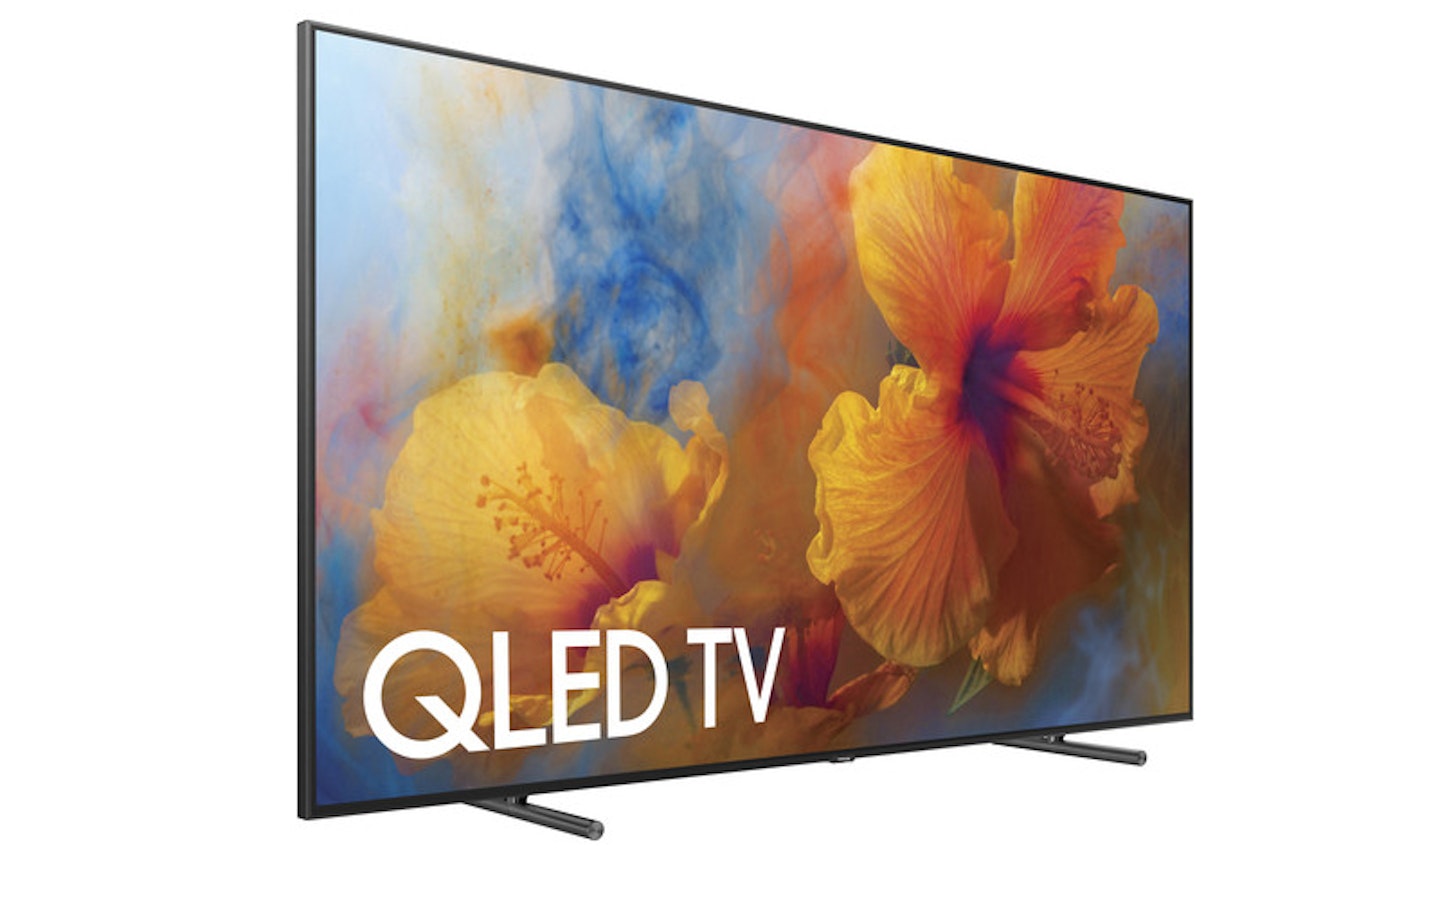 QLED TV display